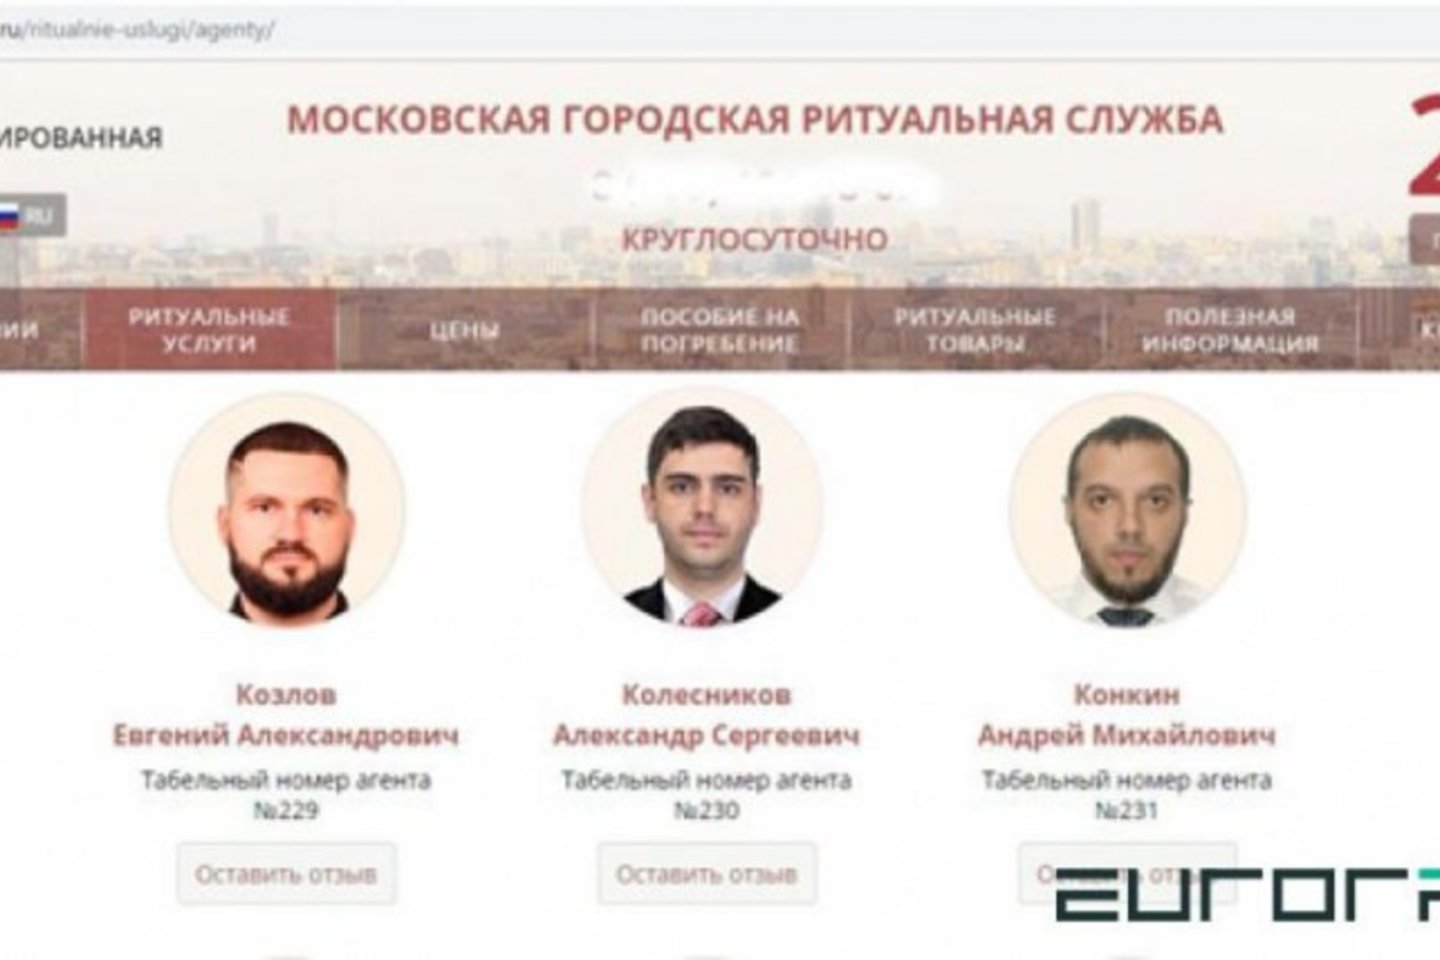  Maskvos laidojimo namų internetinis puslapis, kuriame darbuotoju yra įvardijamas Baltarusijos bendrovės vadovas.